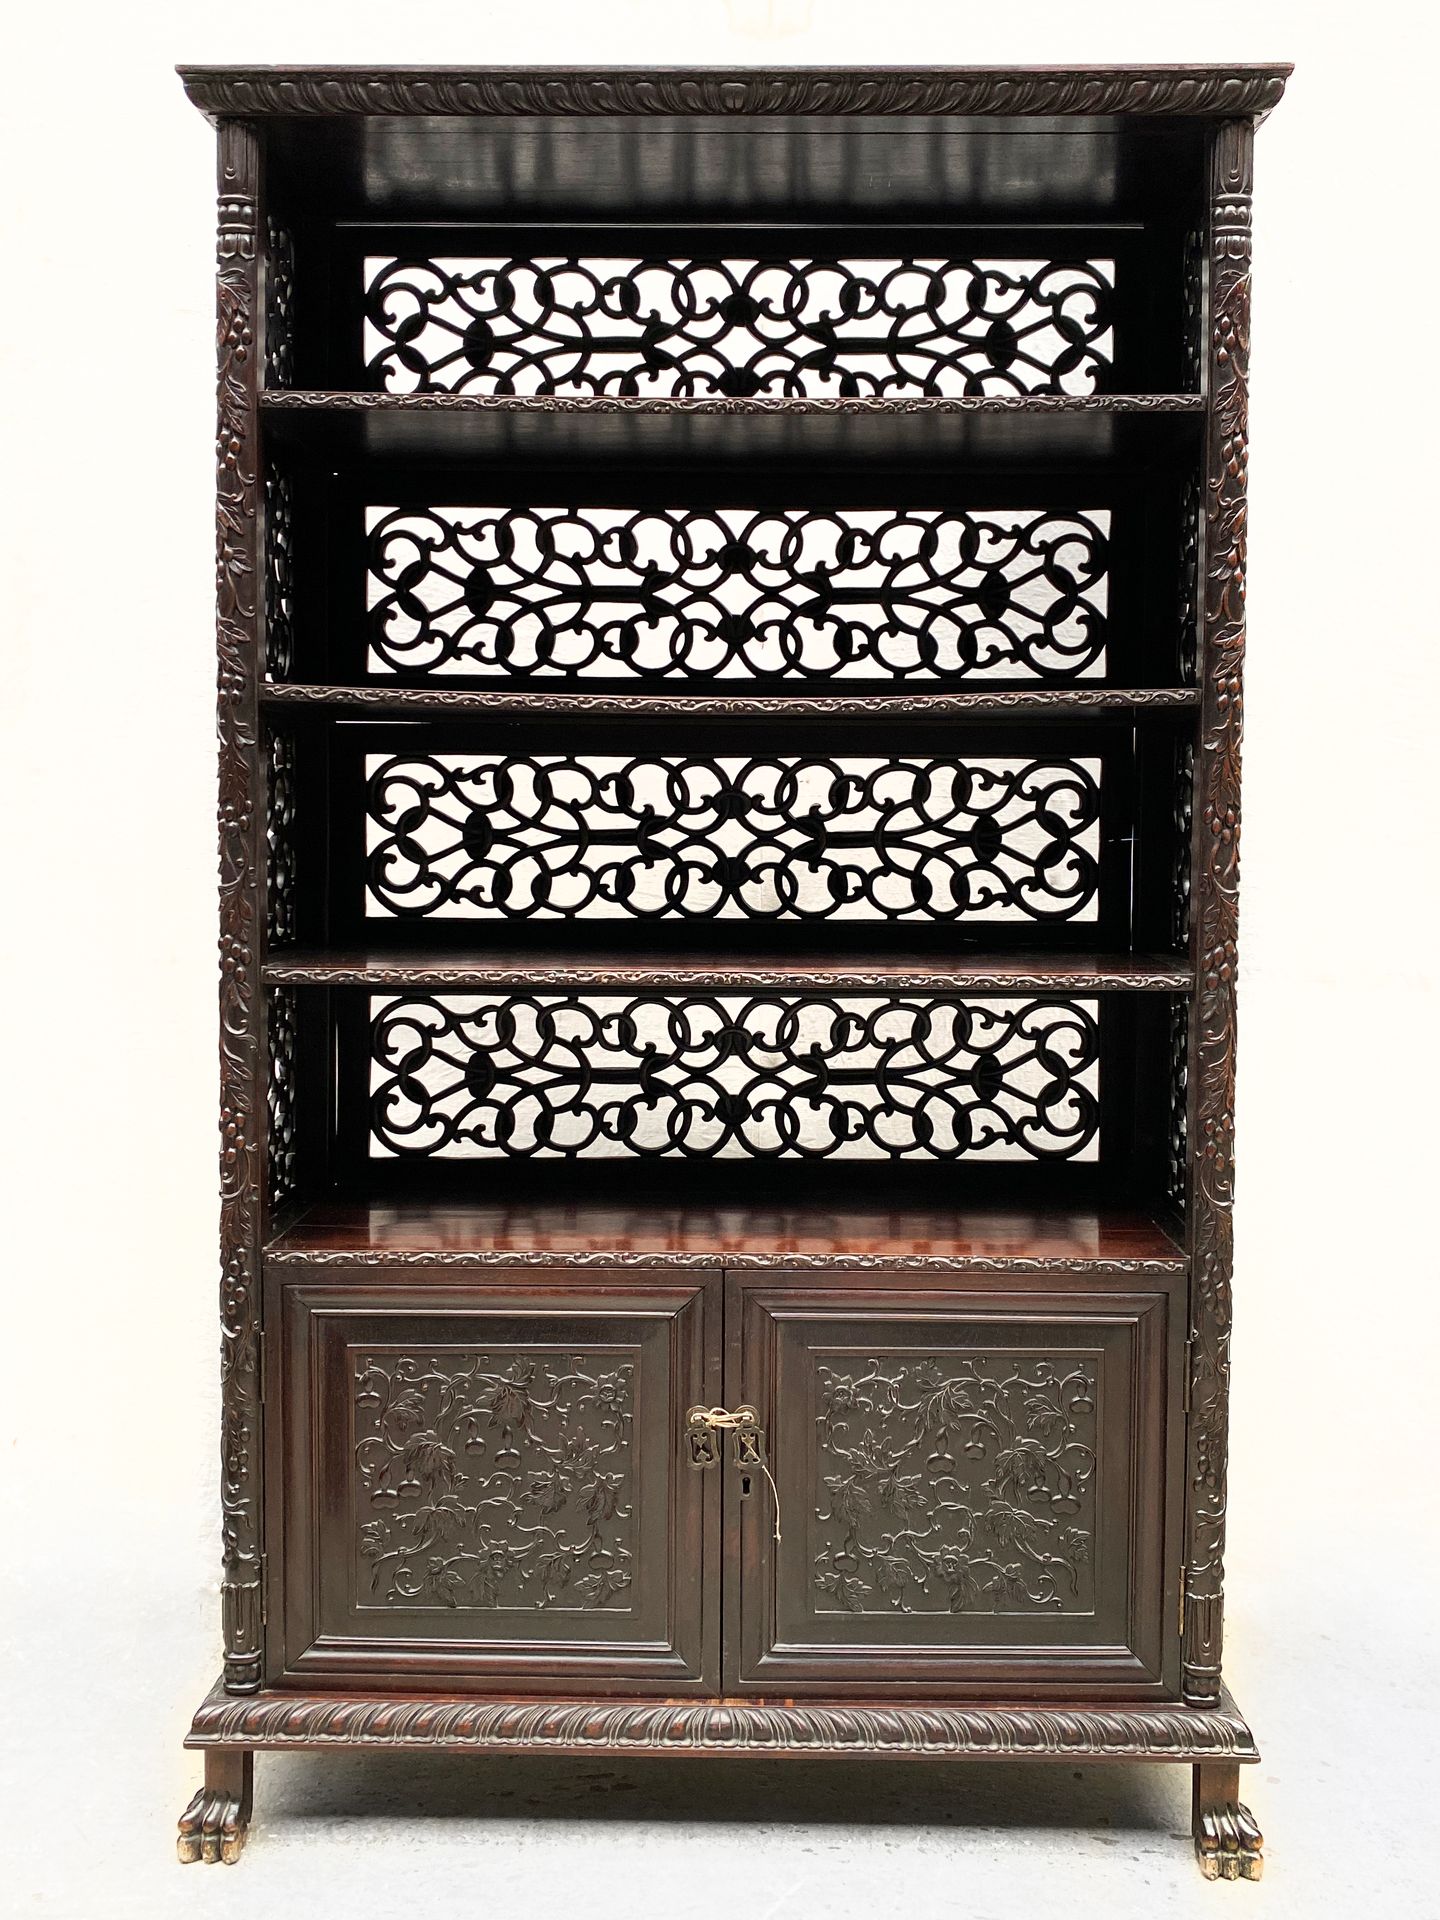 Null 亚洲，19世纪末

一个富于雕刻的彩色木质书柜，上部开有四层，显示出丰富的镂空雕刻叶子的装饰。

下部打开两扇门，上面有雕刻的装饰。

靠着四只狮爪的&hellip;